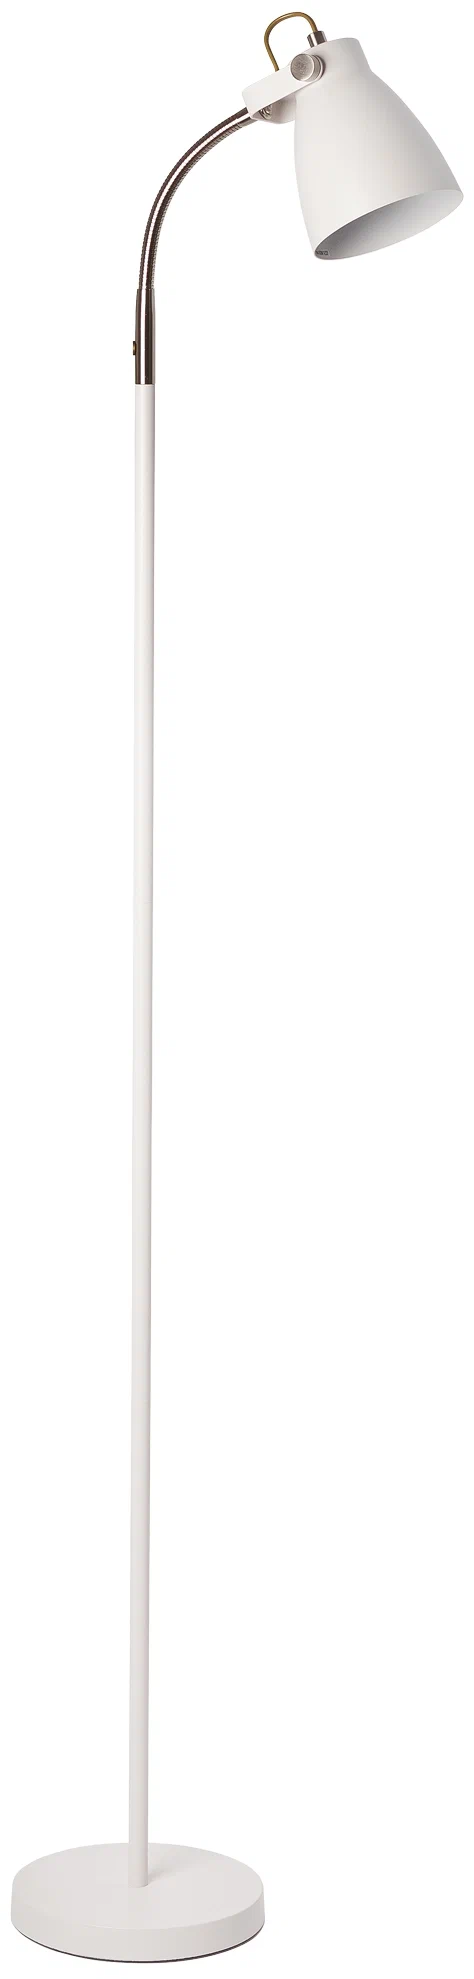 Светильник напольный HT-733W, ARTSTYLE, белый